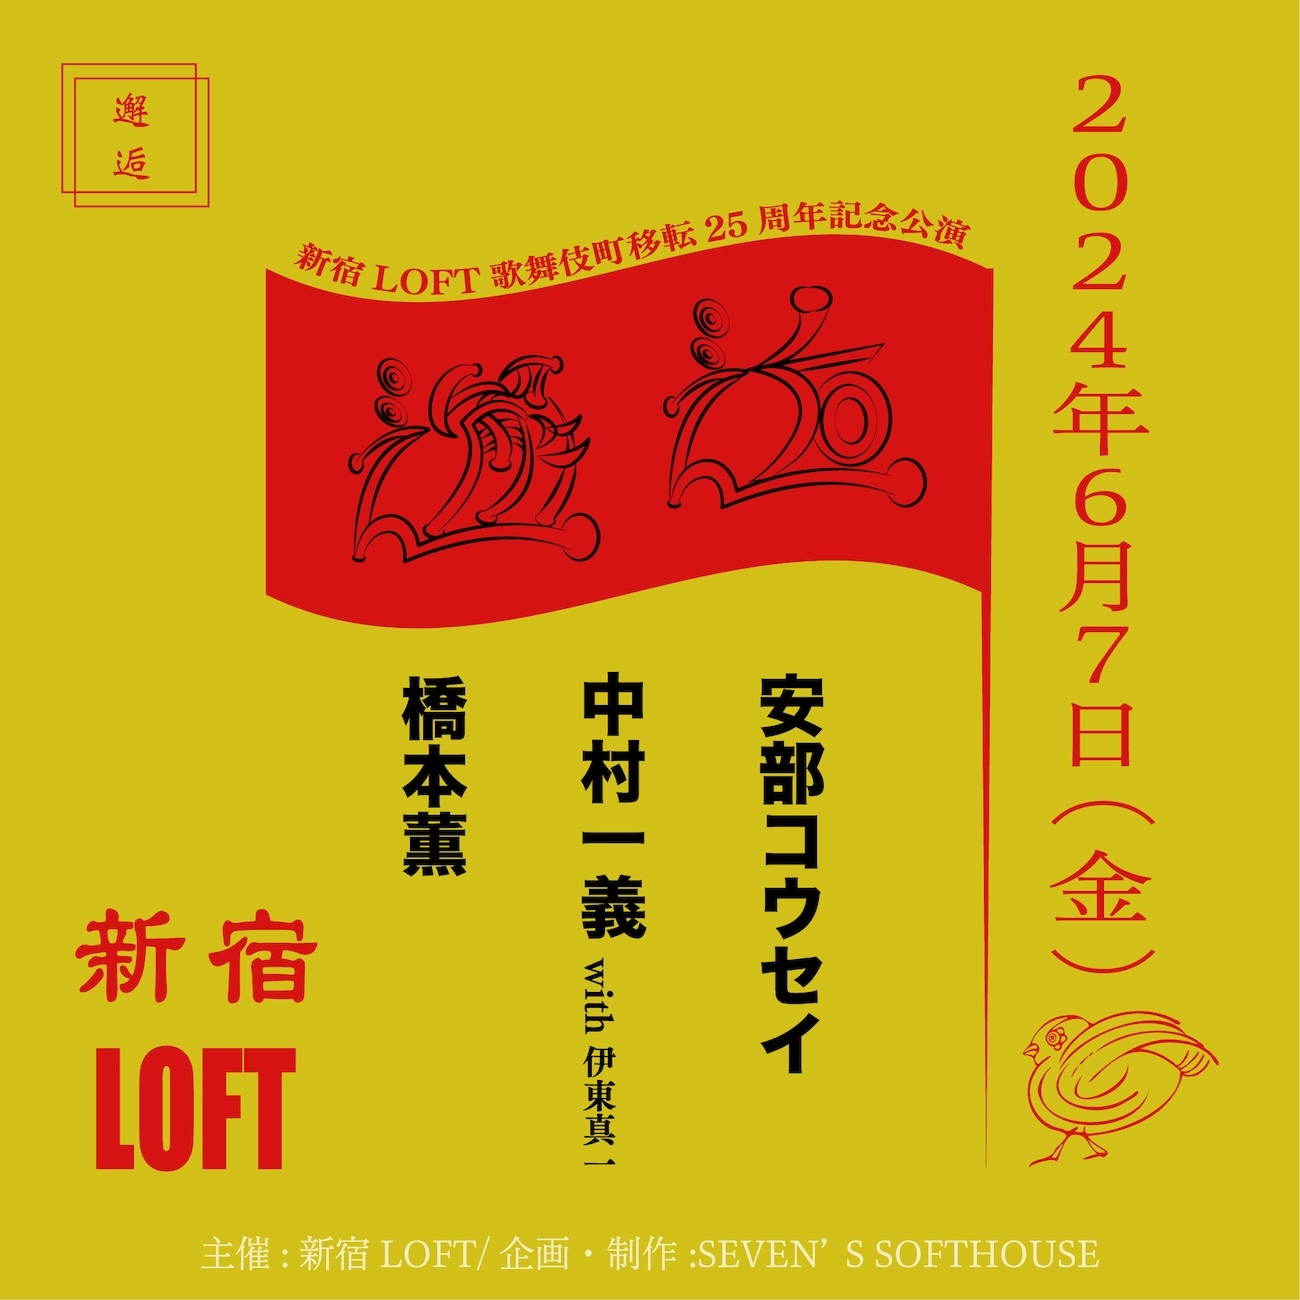 新宿LOFT歌舞伎町移転25周年記念公演『邂逅』